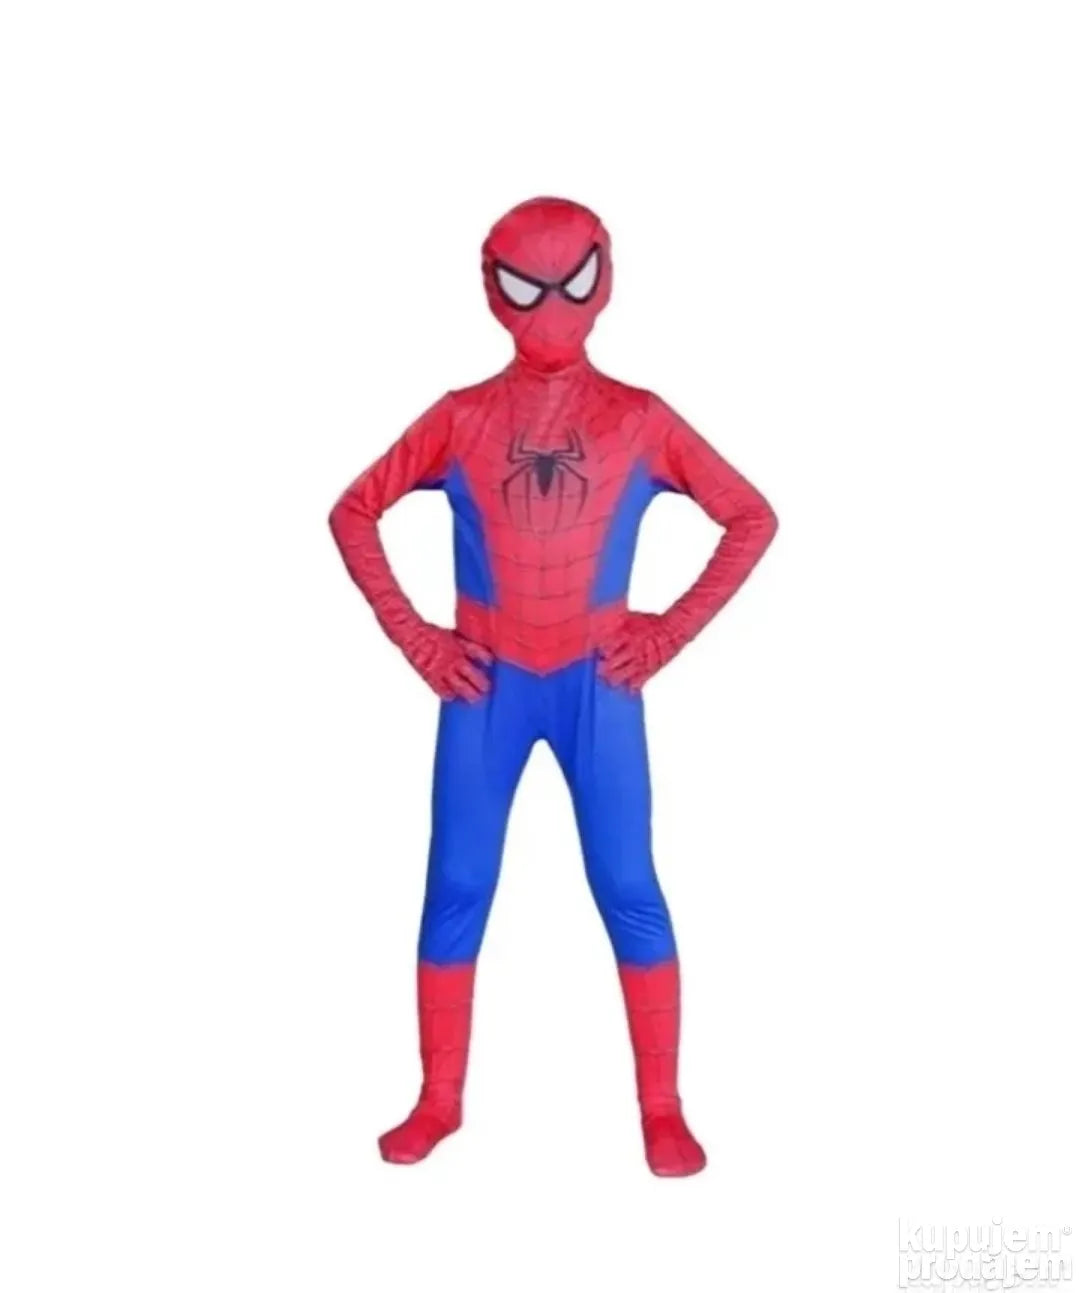 Spiderman kostim 100 do 115cm 2K24 m437 - Spiderman kostim 100 do 115cm 2K24 m437